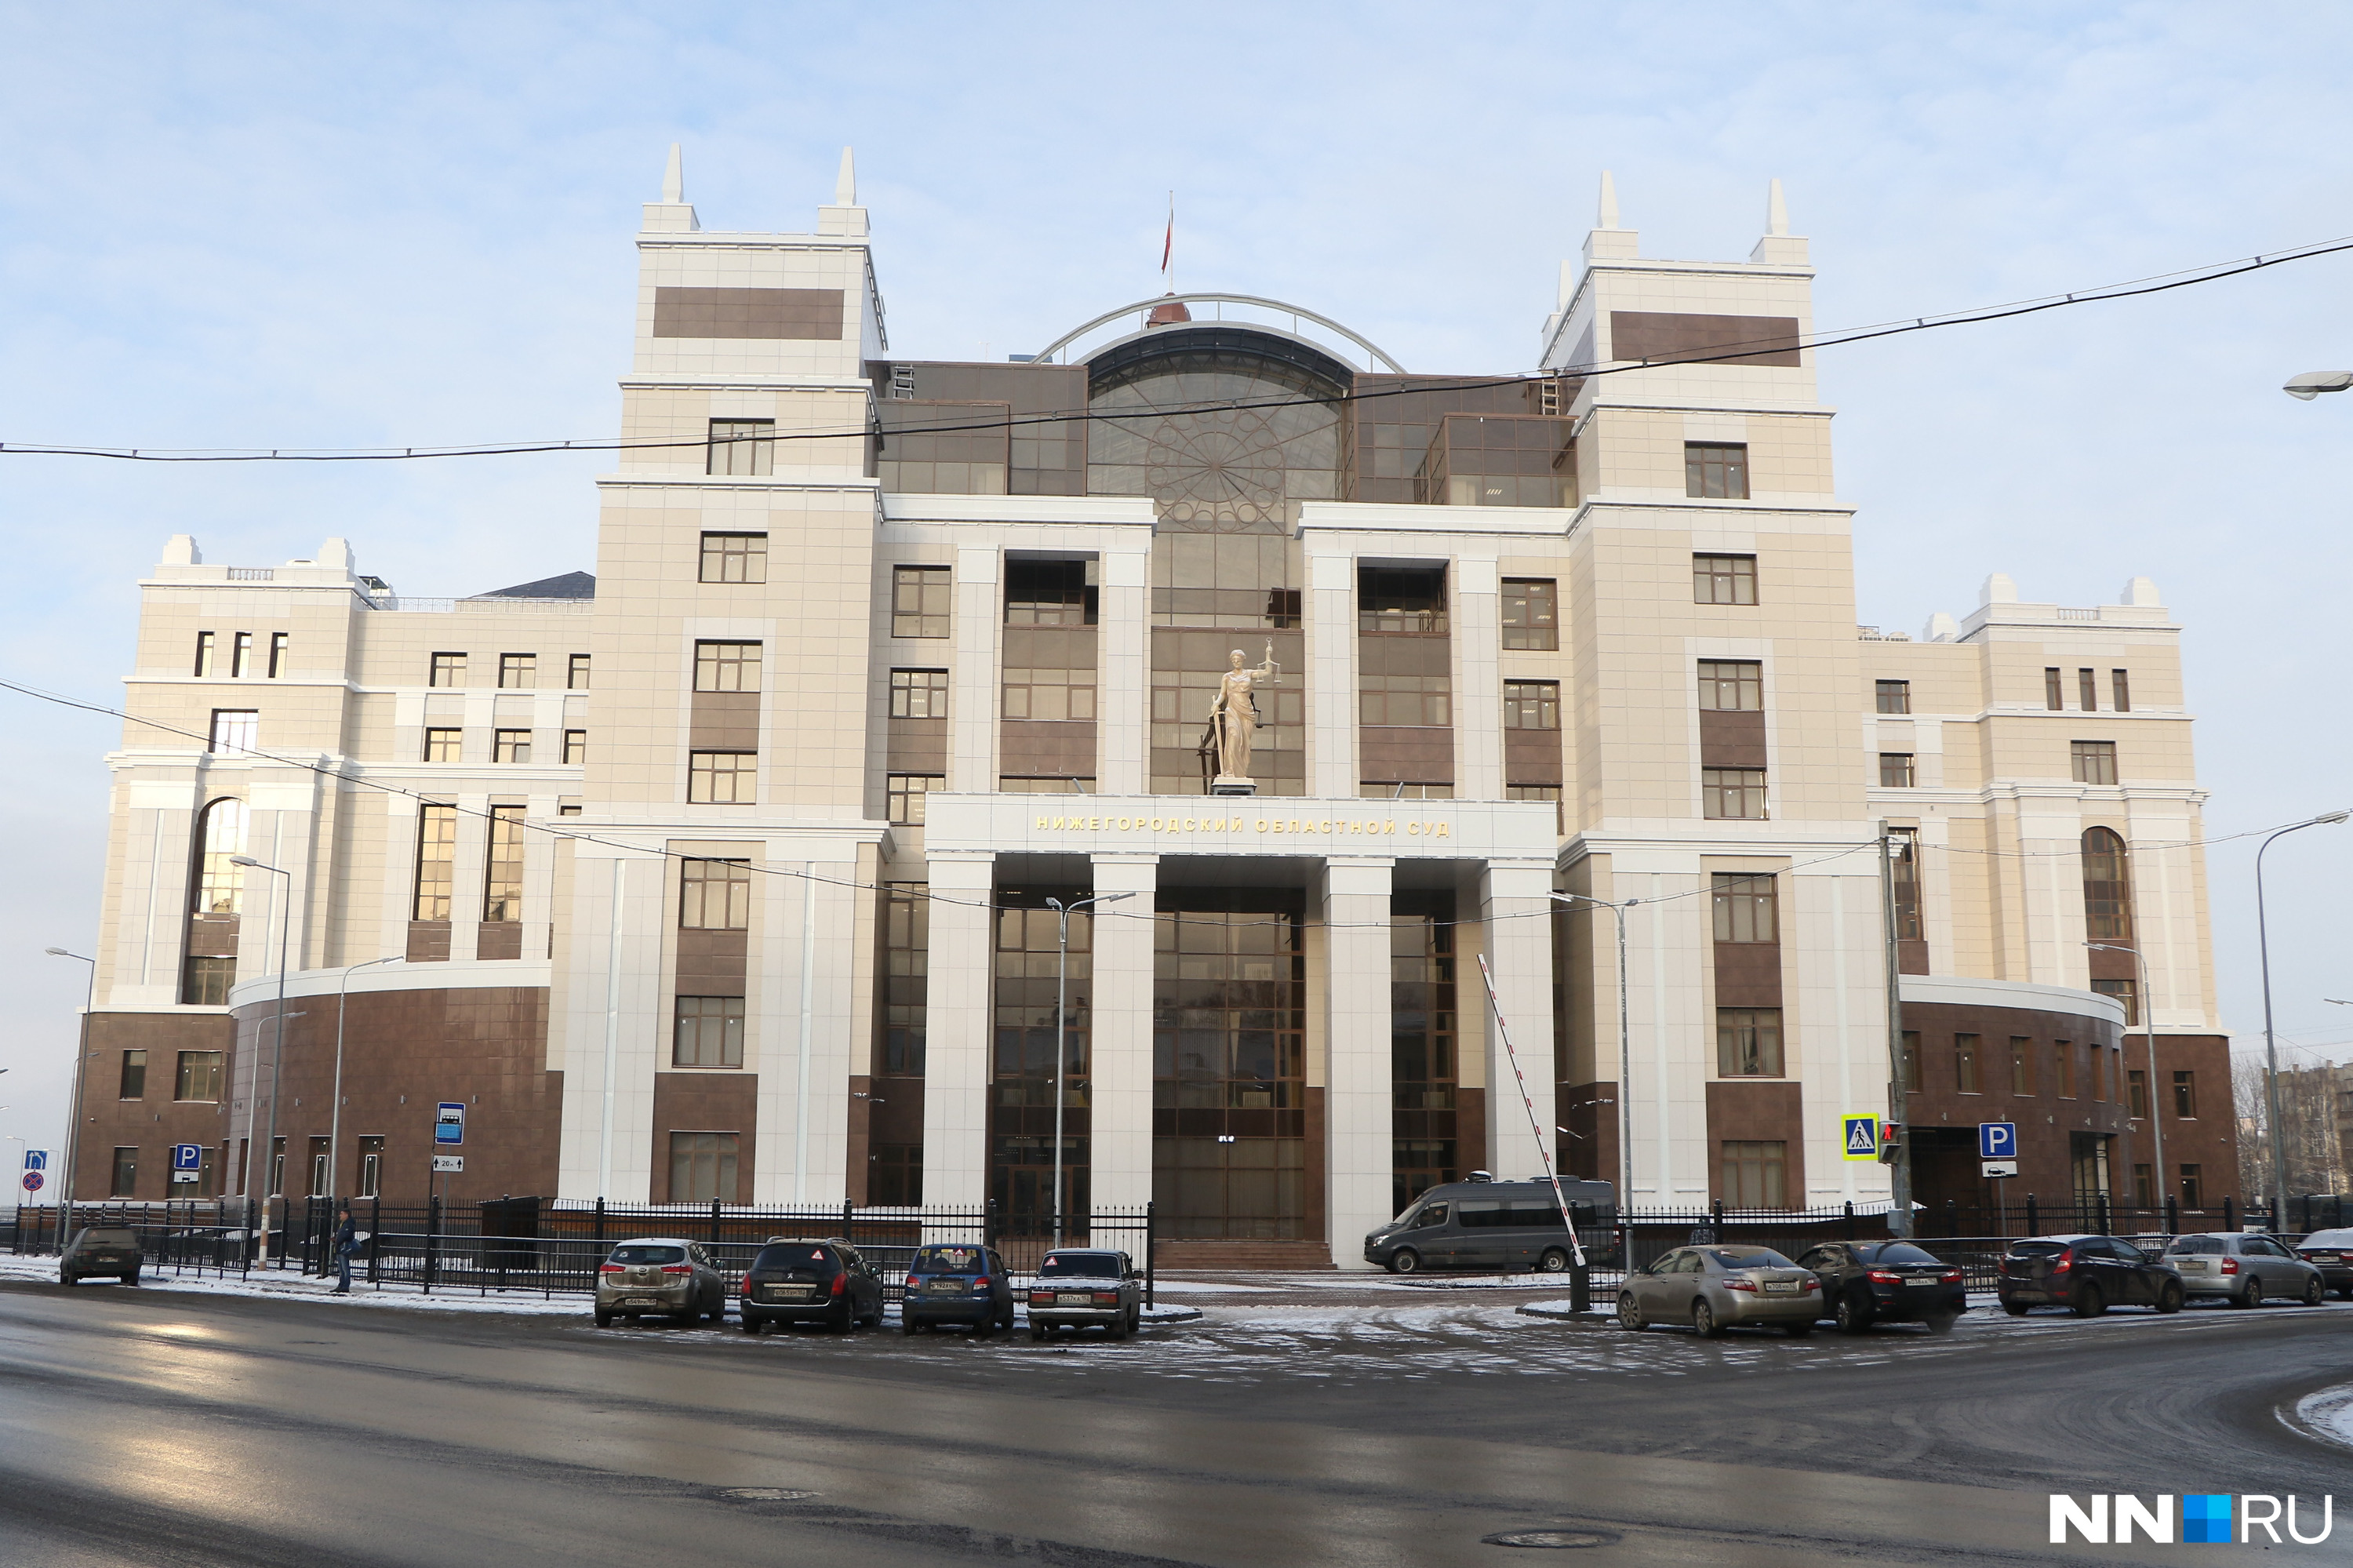 Из Нижегородского районного суда дело было передано в Областной суд для рассмотрения апелляции